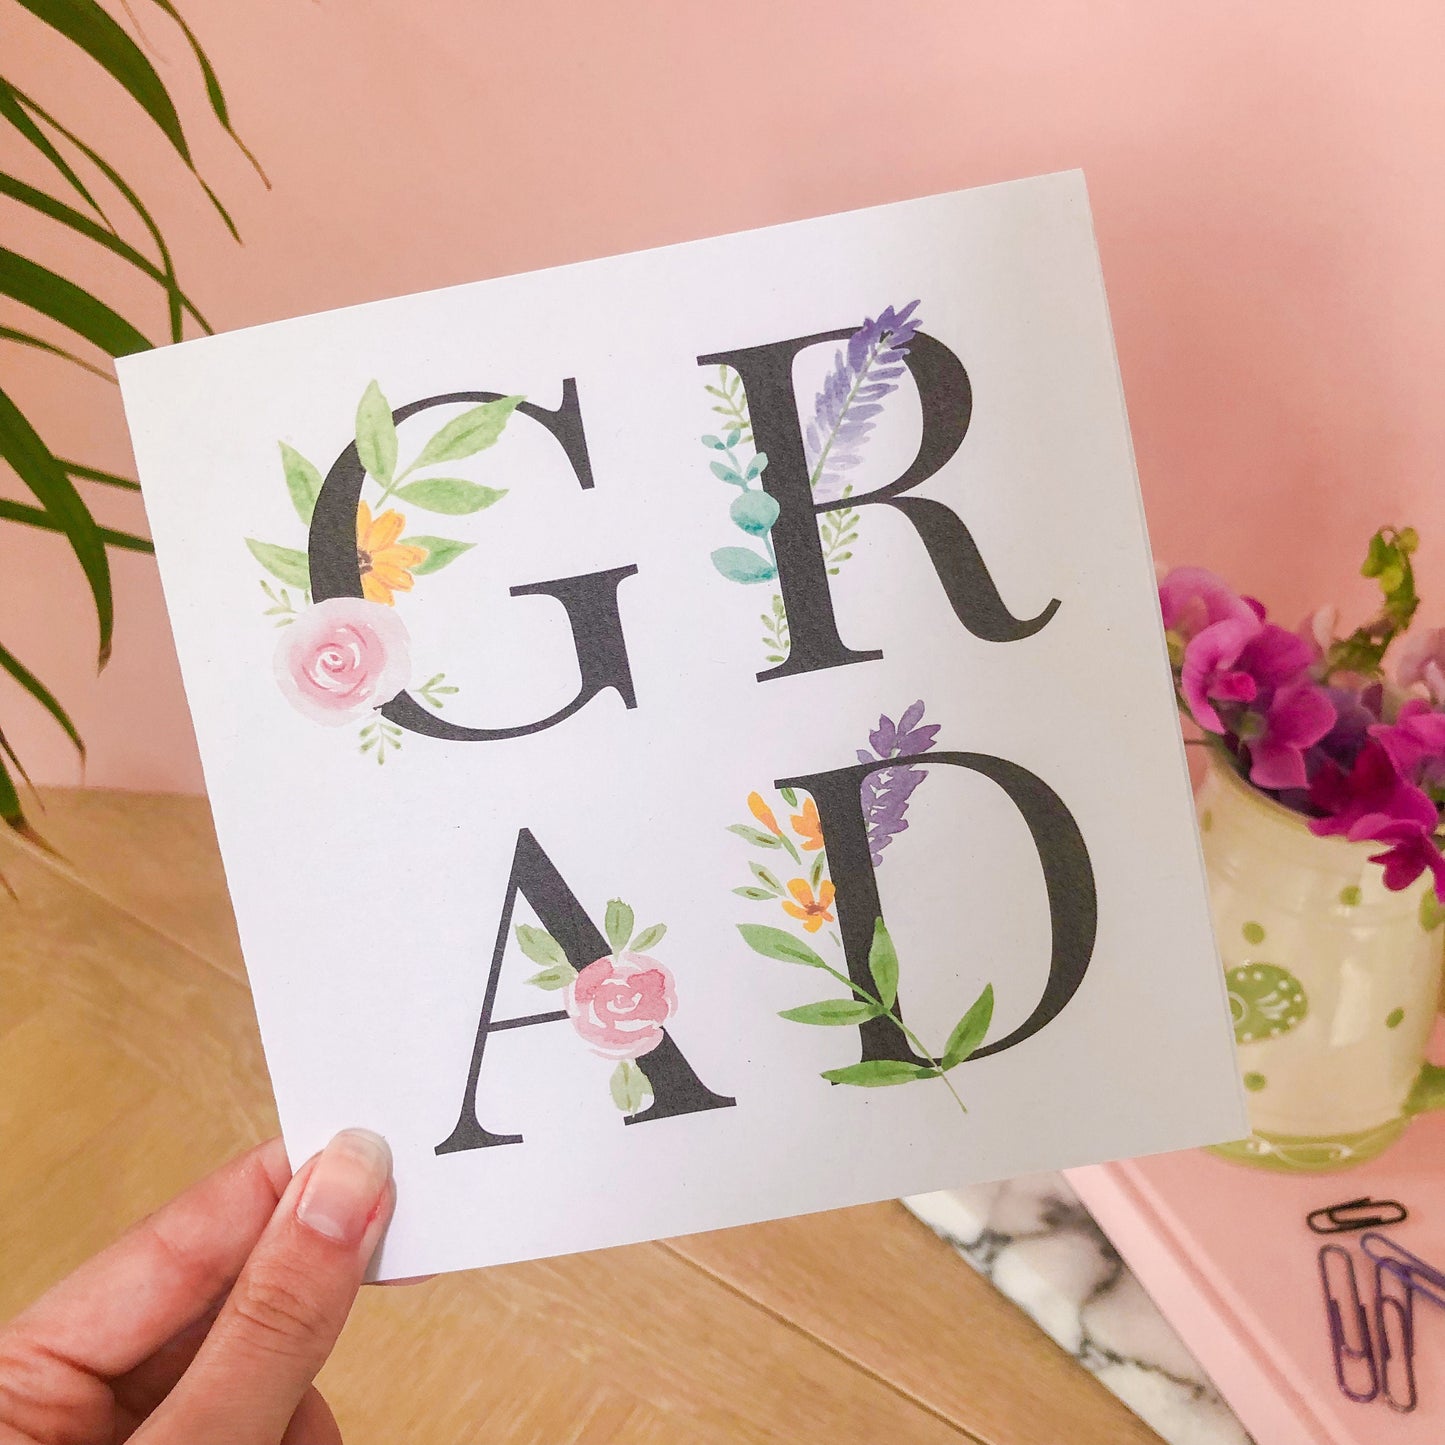 GRAD - Graduation Card